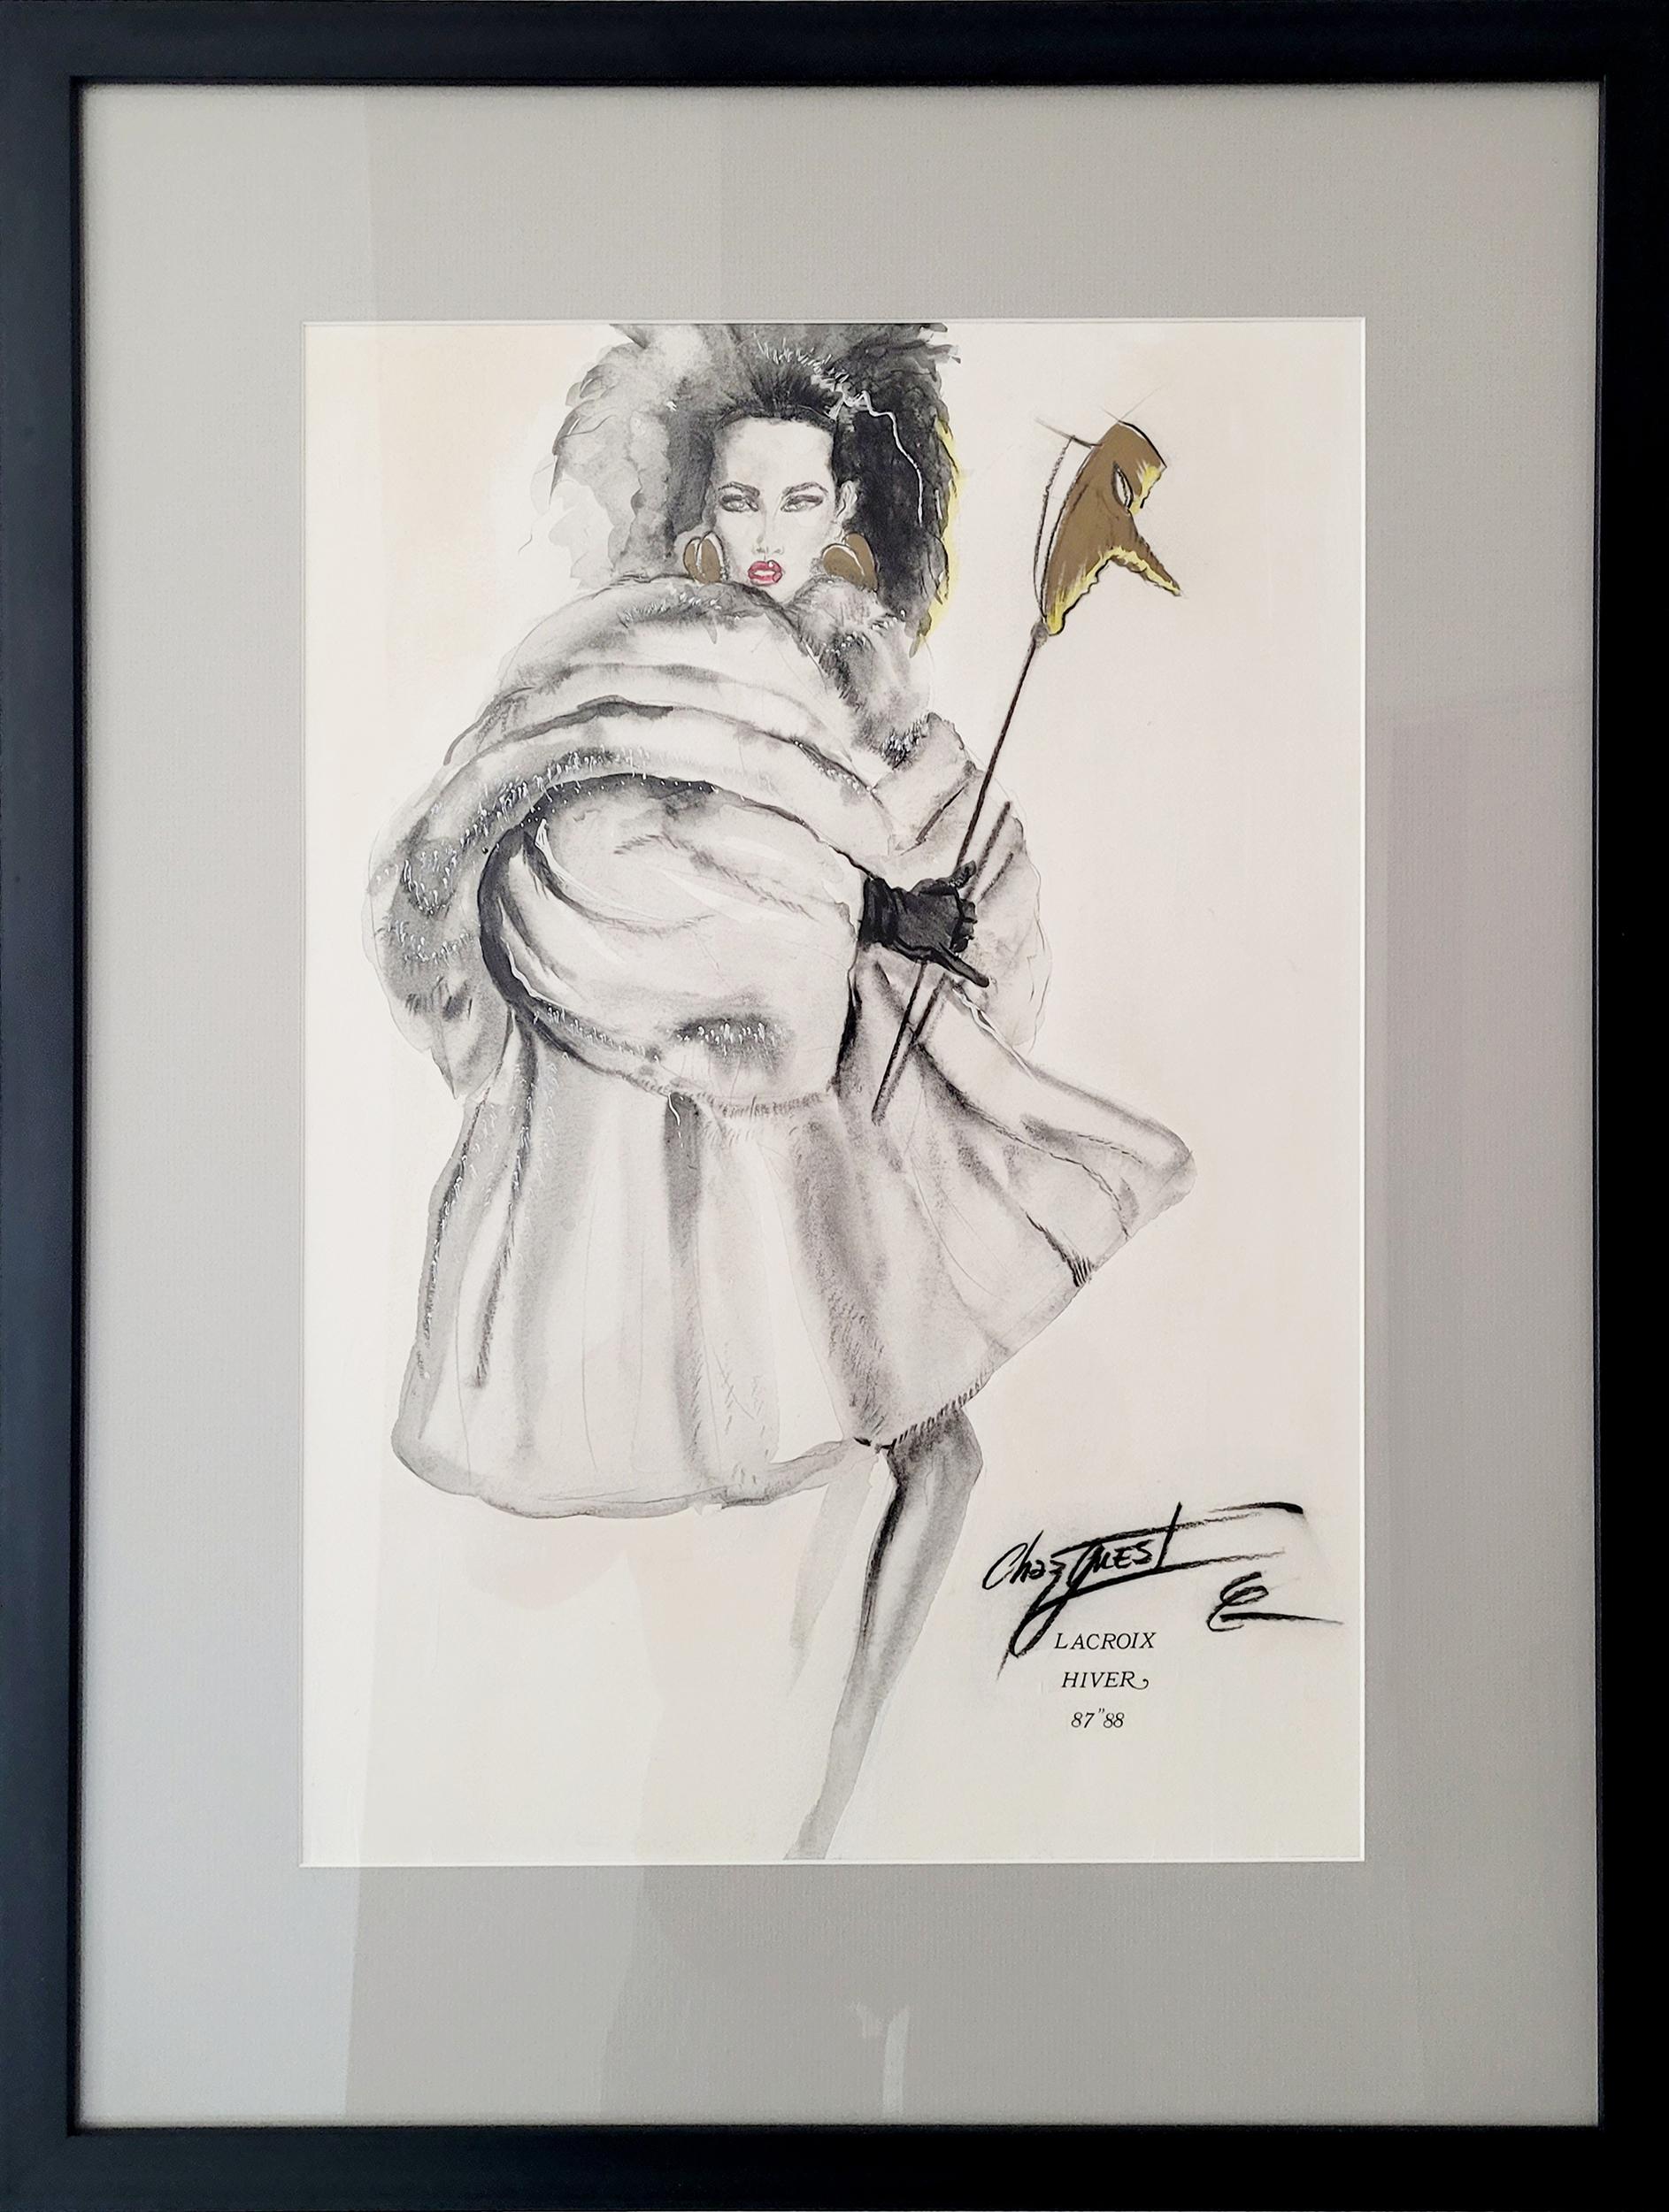 Lacroix Hiver
Chaz Guest, Amerikaner (1961)
Datum: 1987-88
Zeichnung mit Bleistift, signiert
Größe: 20,5 x 14,5 Zoll (52,07 x 36,83 cm)
Rahmengröße: 27,5 x 21 Zoll